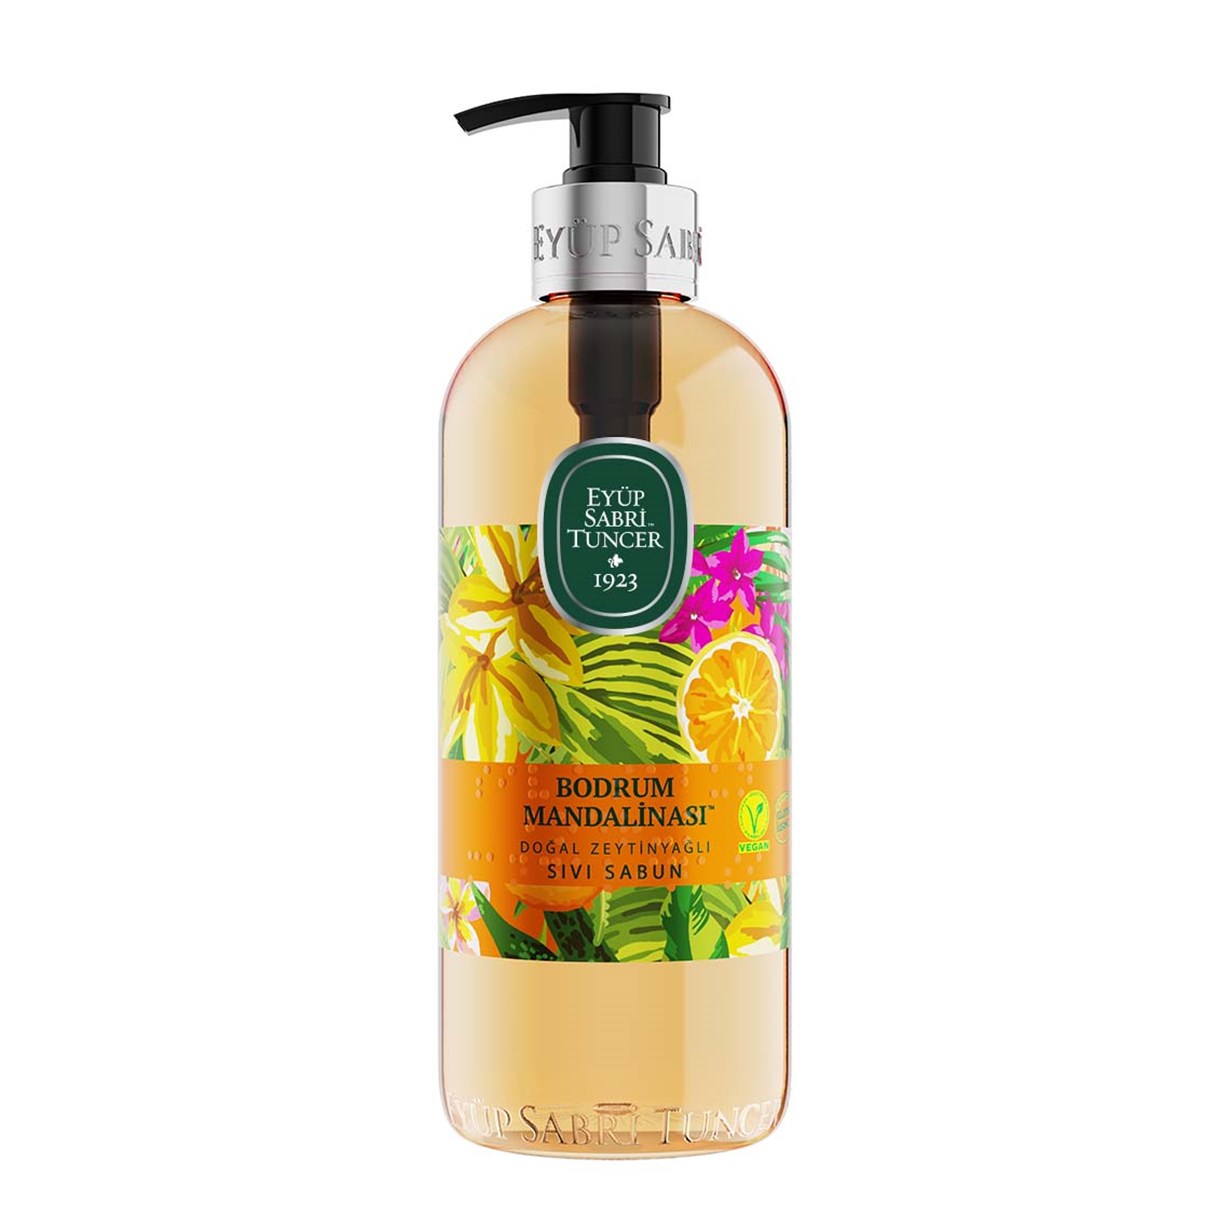 EST Bodrum Mandarin Natural Olive Oil Soap